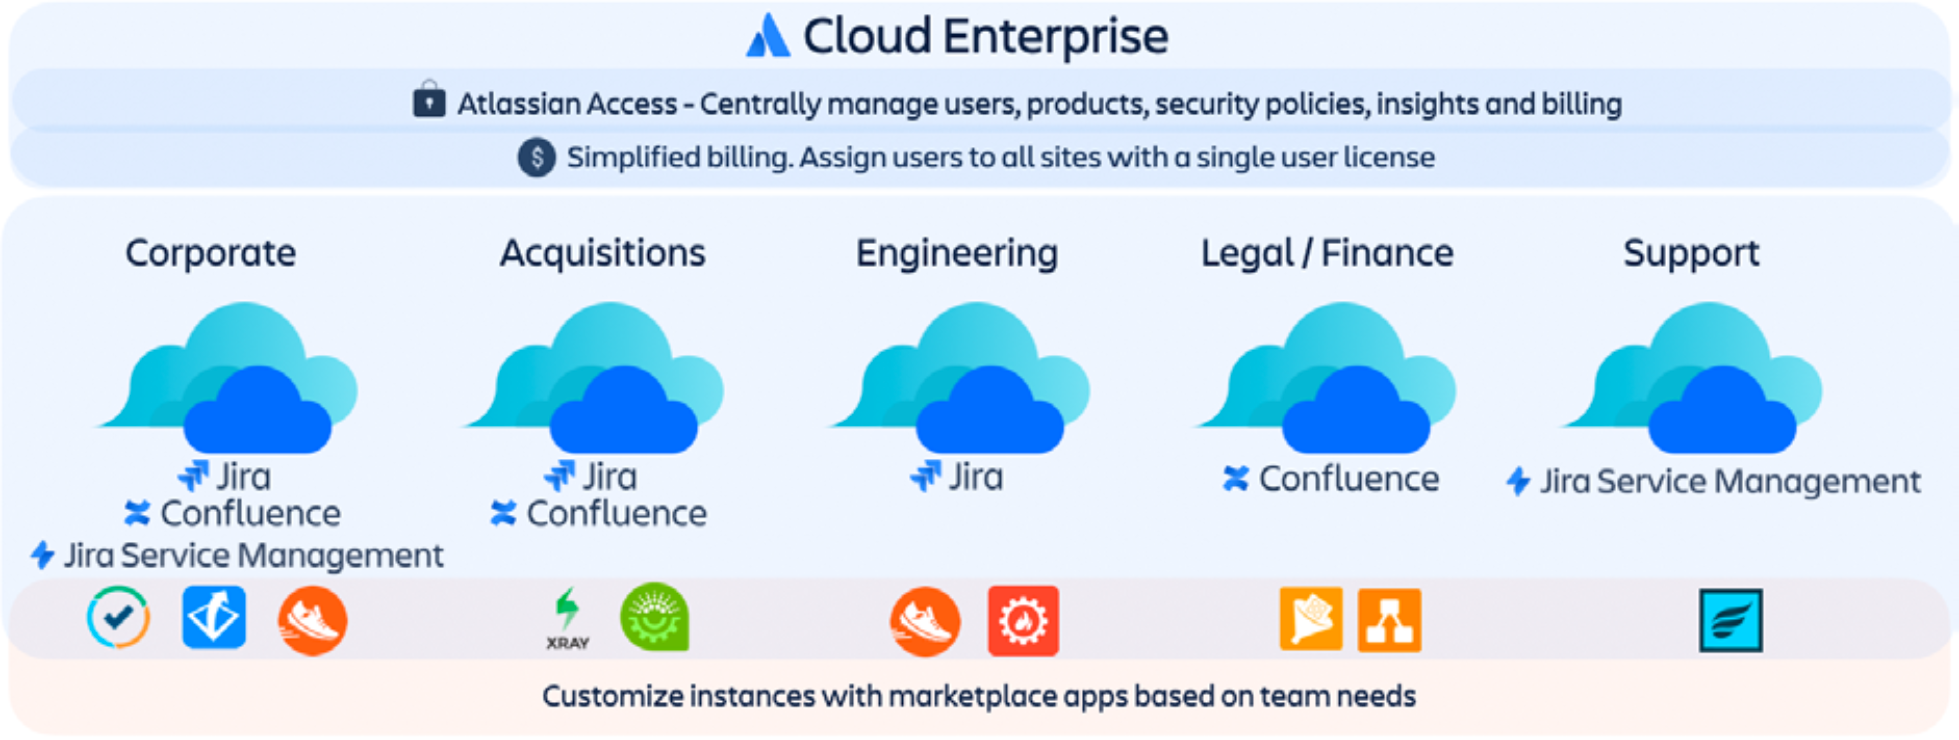 Atlassian Cloud Enterprise como escalar sin riesgos